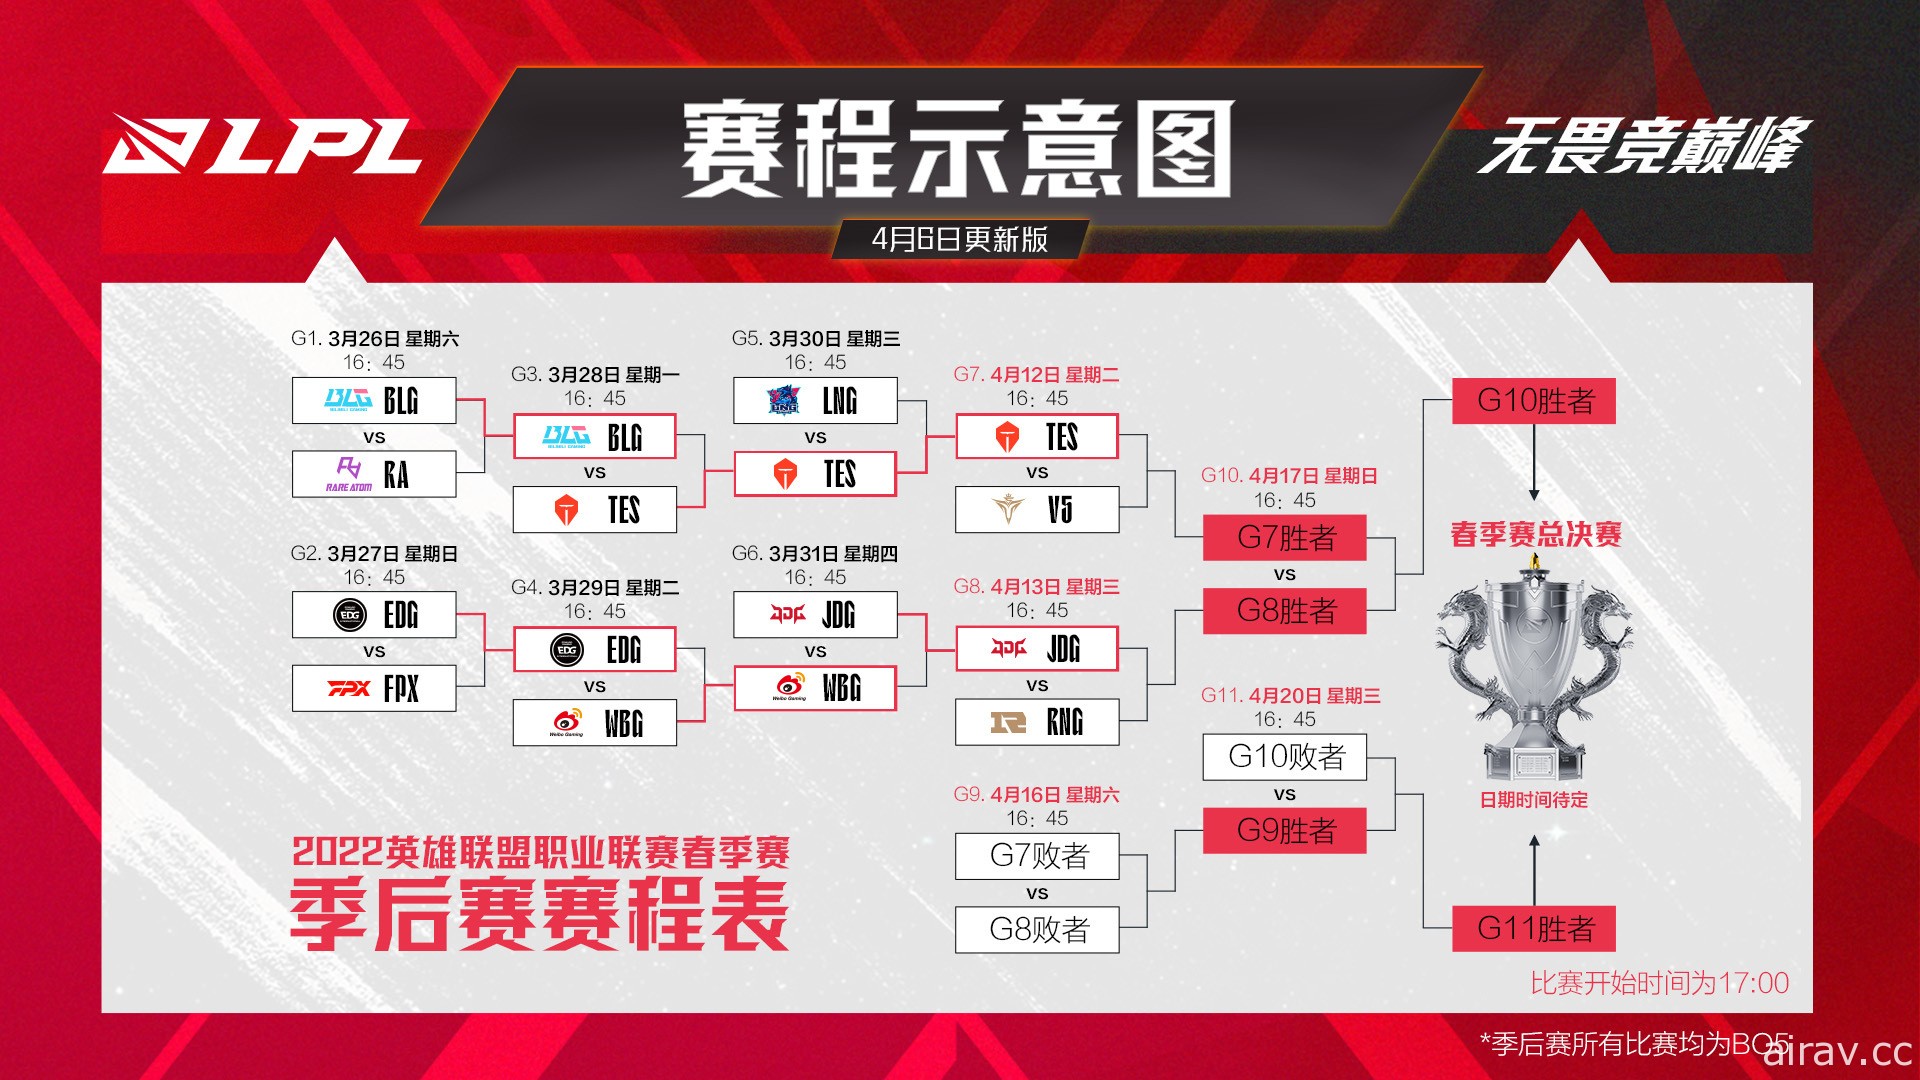 中國疫情持續升溫 《英雄聯盟》LPL 聯賽春季季後賽再度宣布延賽